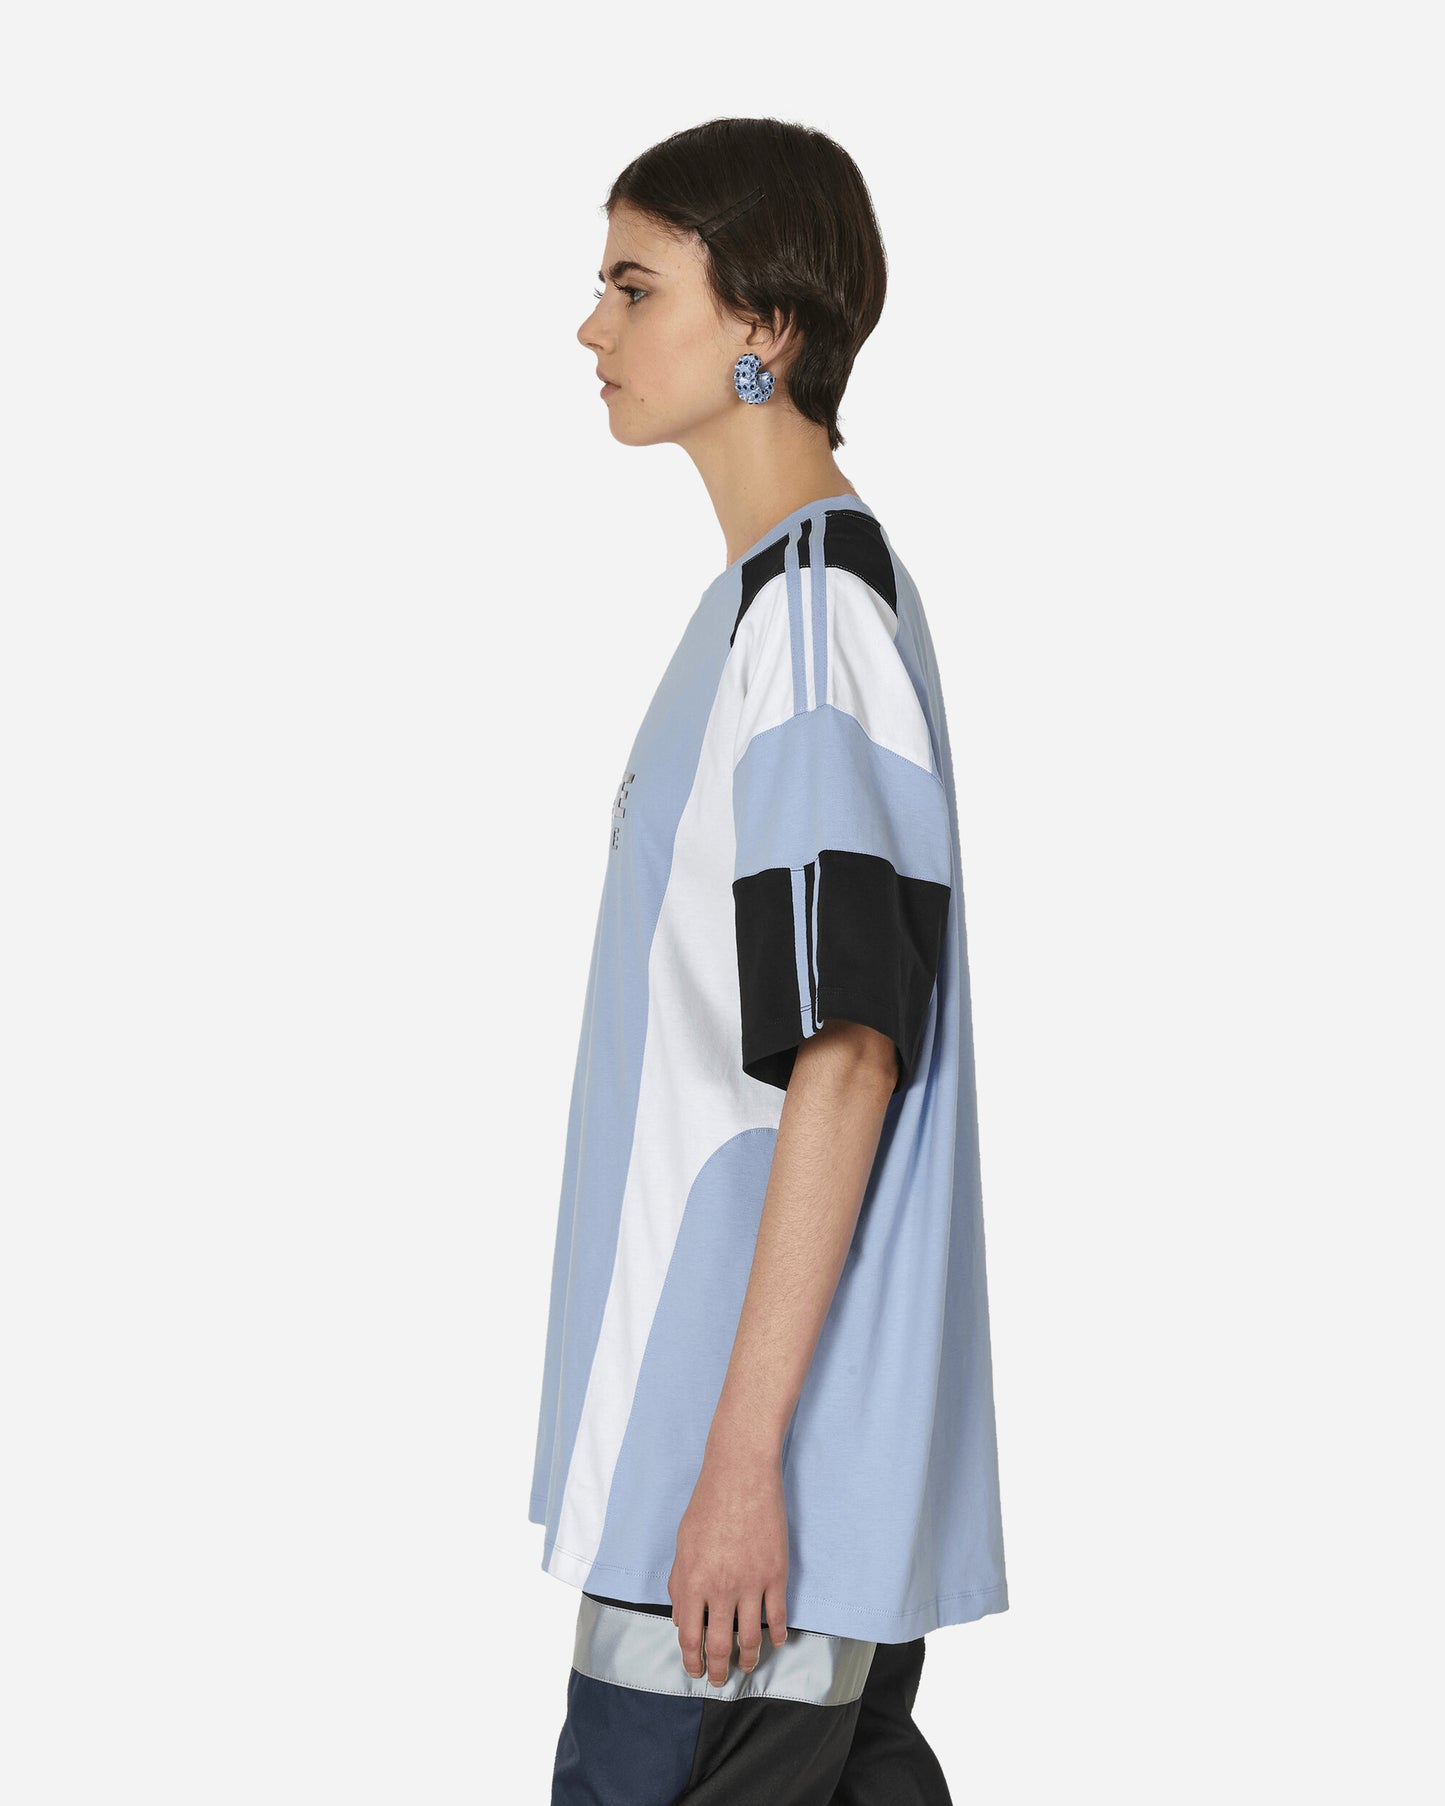 Martine Rose Oversized Panelled T-Shirt Blue/White/Black T-Shirts Shortsleeve MRSS24-630 BWHIBL